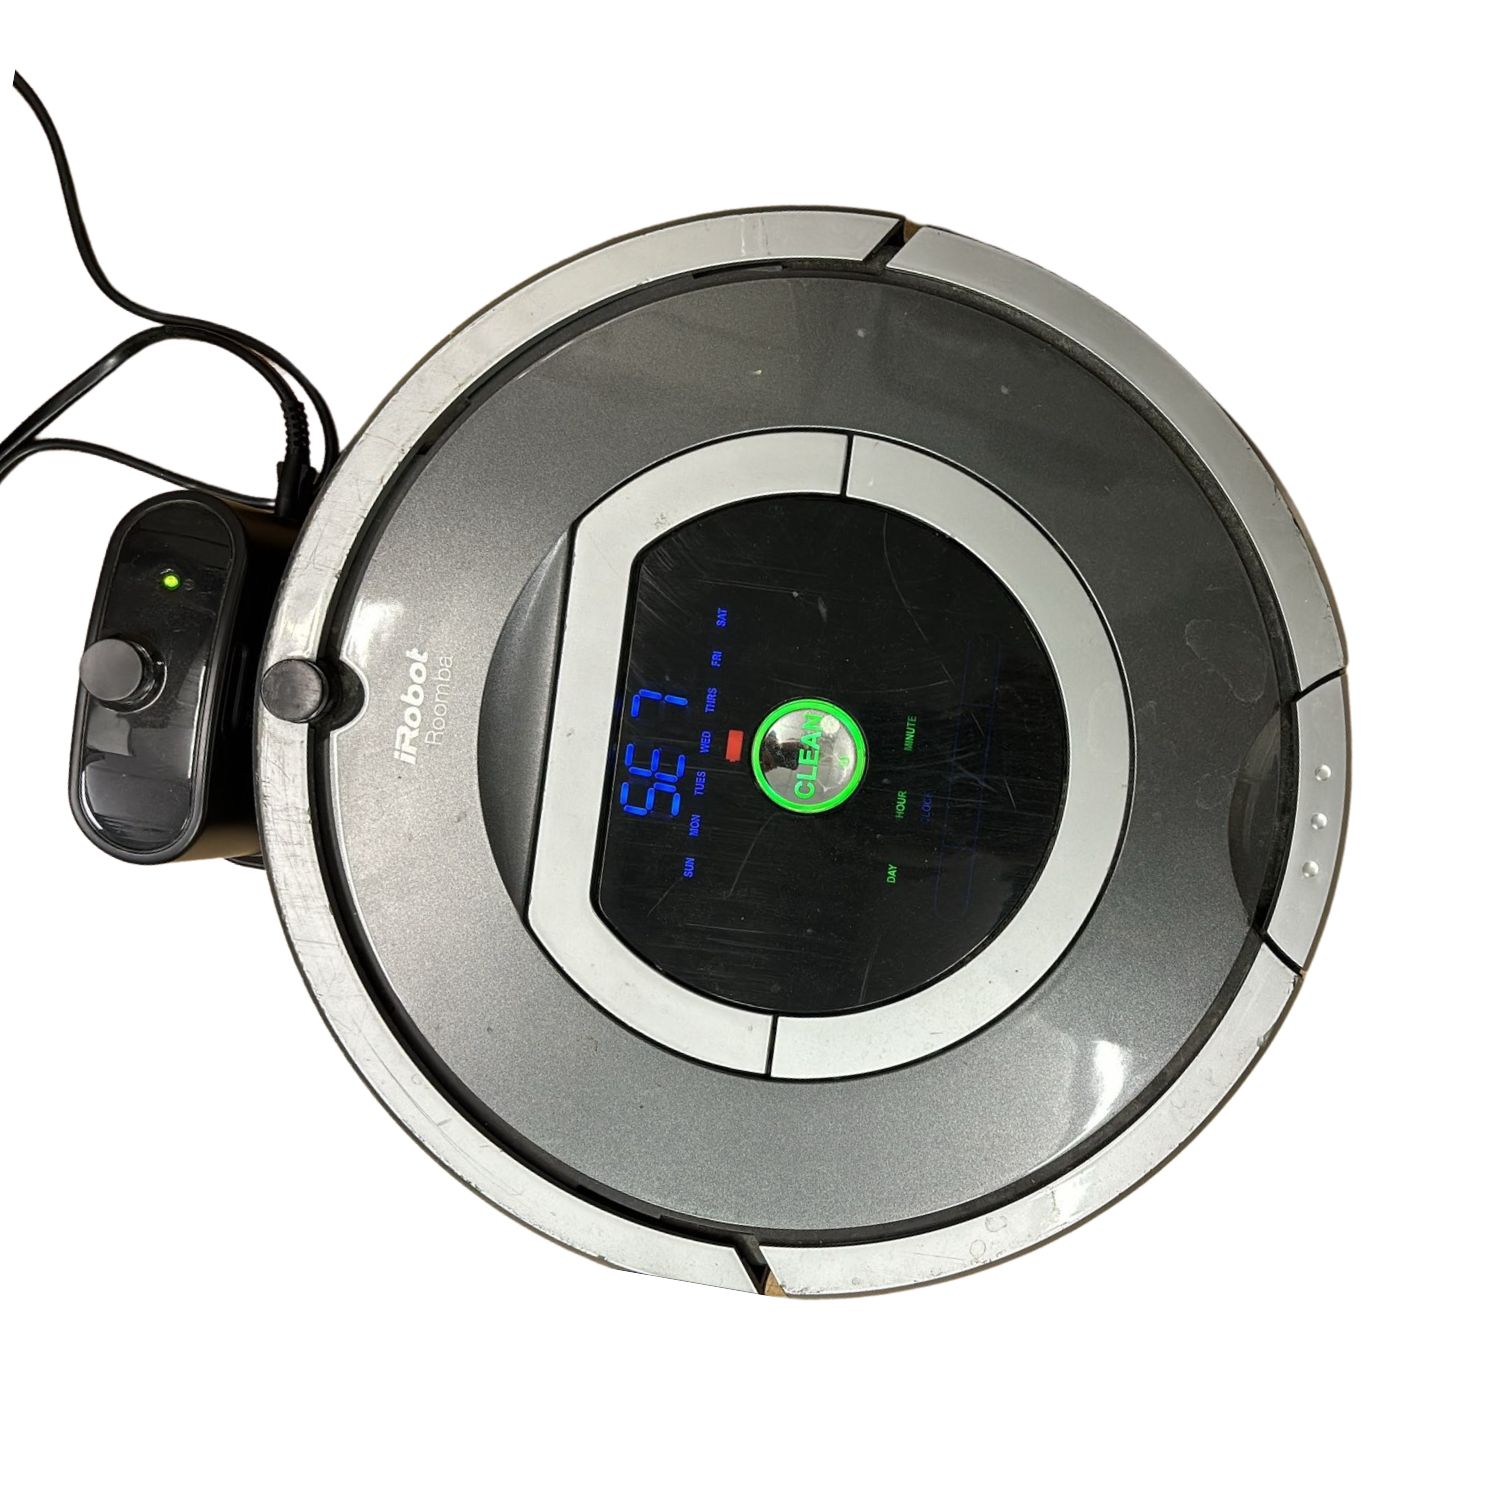 二手Irobot Roomba 780 掃地機(保固半年) $2488